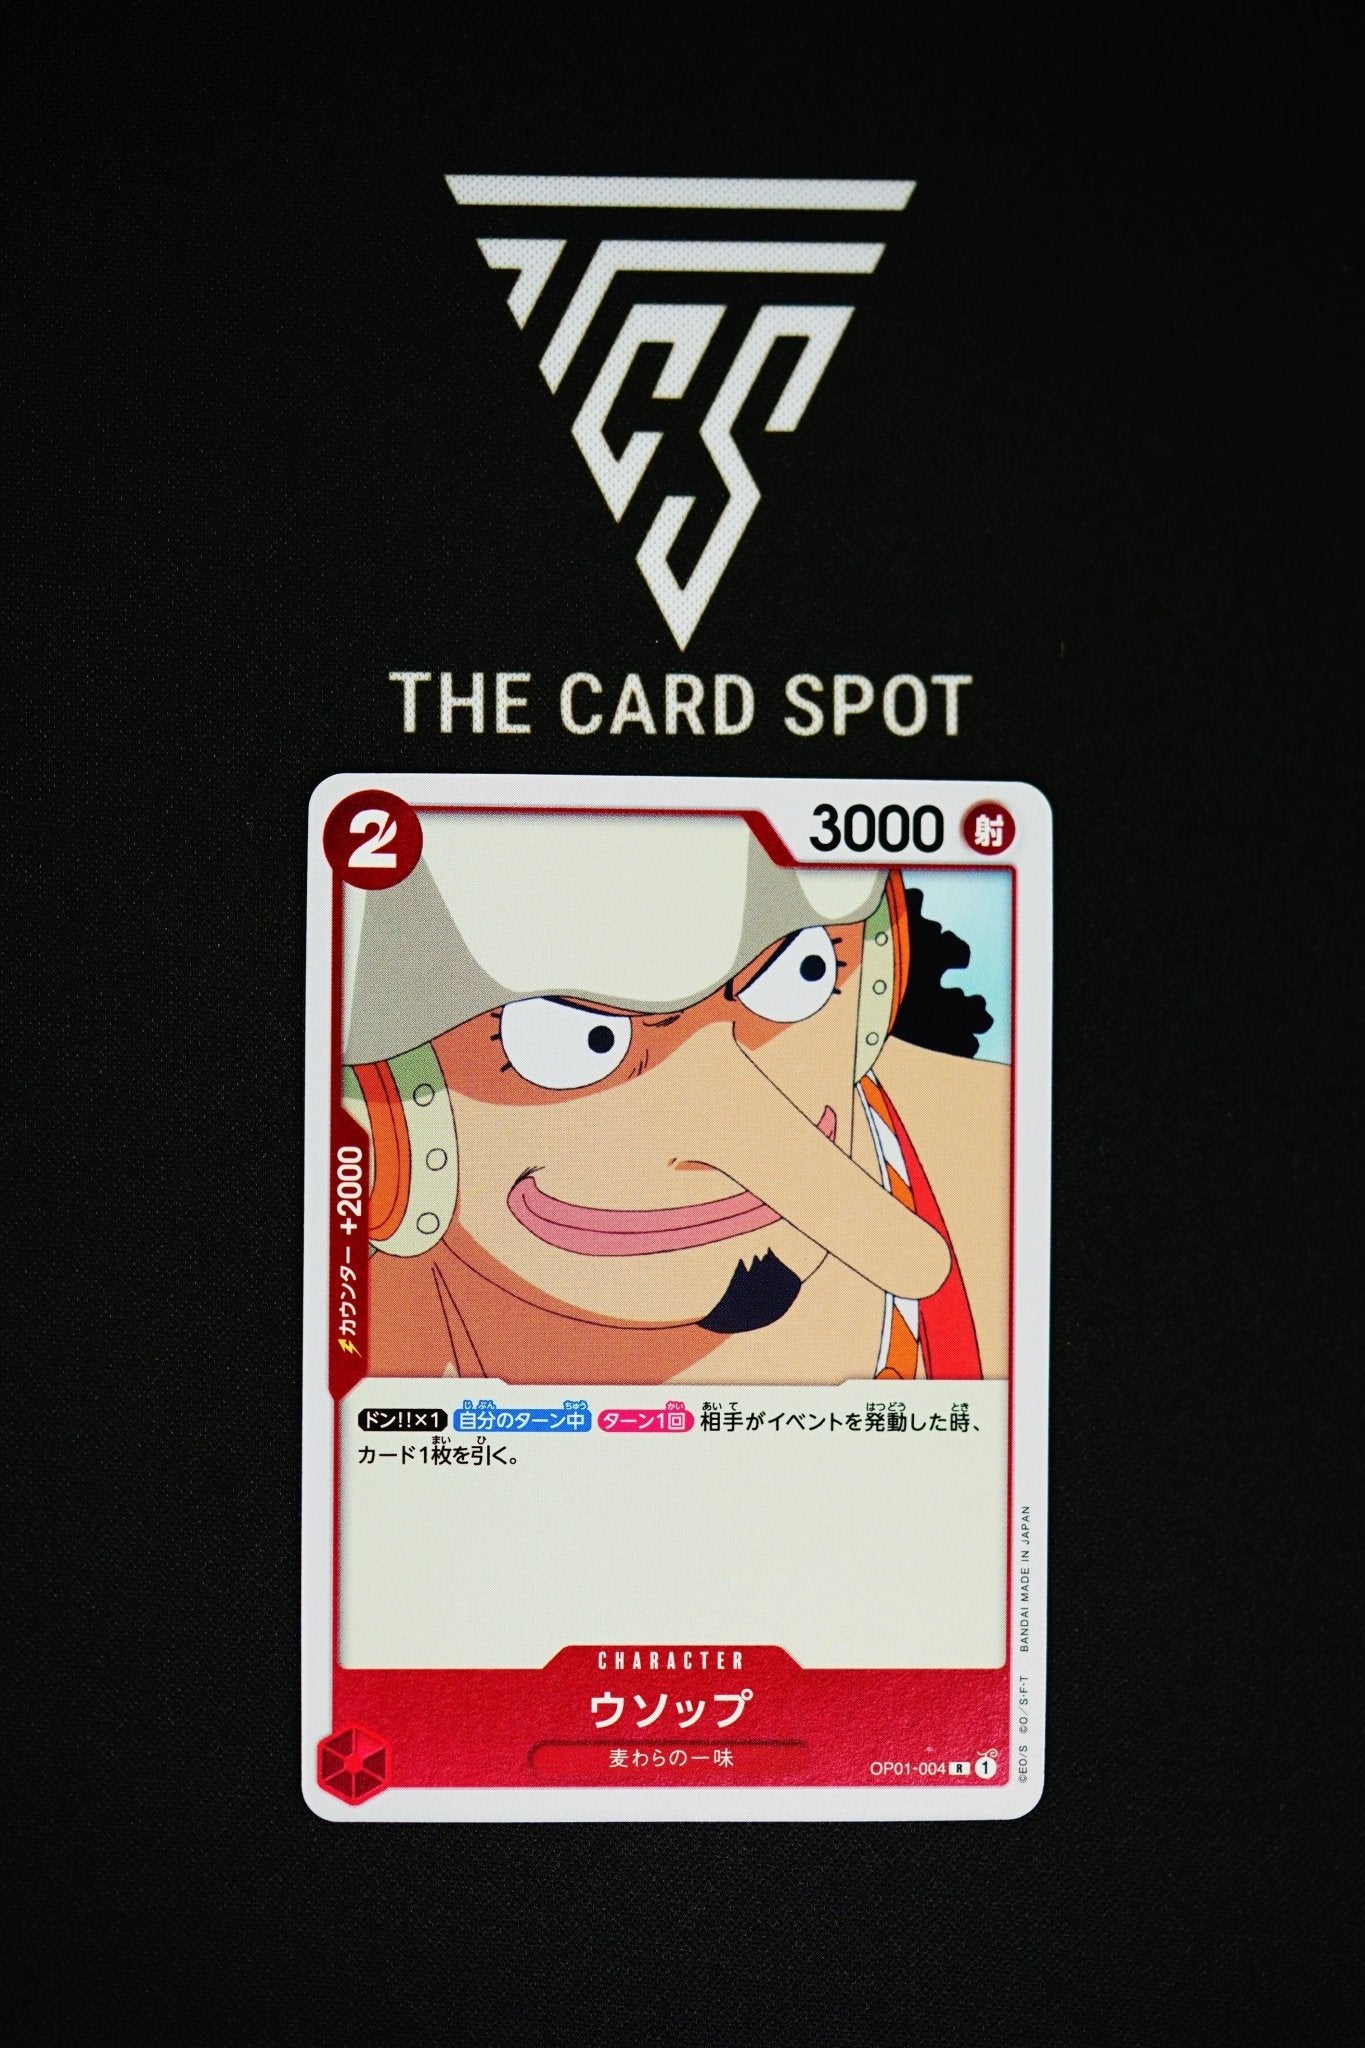 OP01-004 R Usopp - One Piece - THE CARD SPOT PTY LTD.One Piece CardsONE PIECE